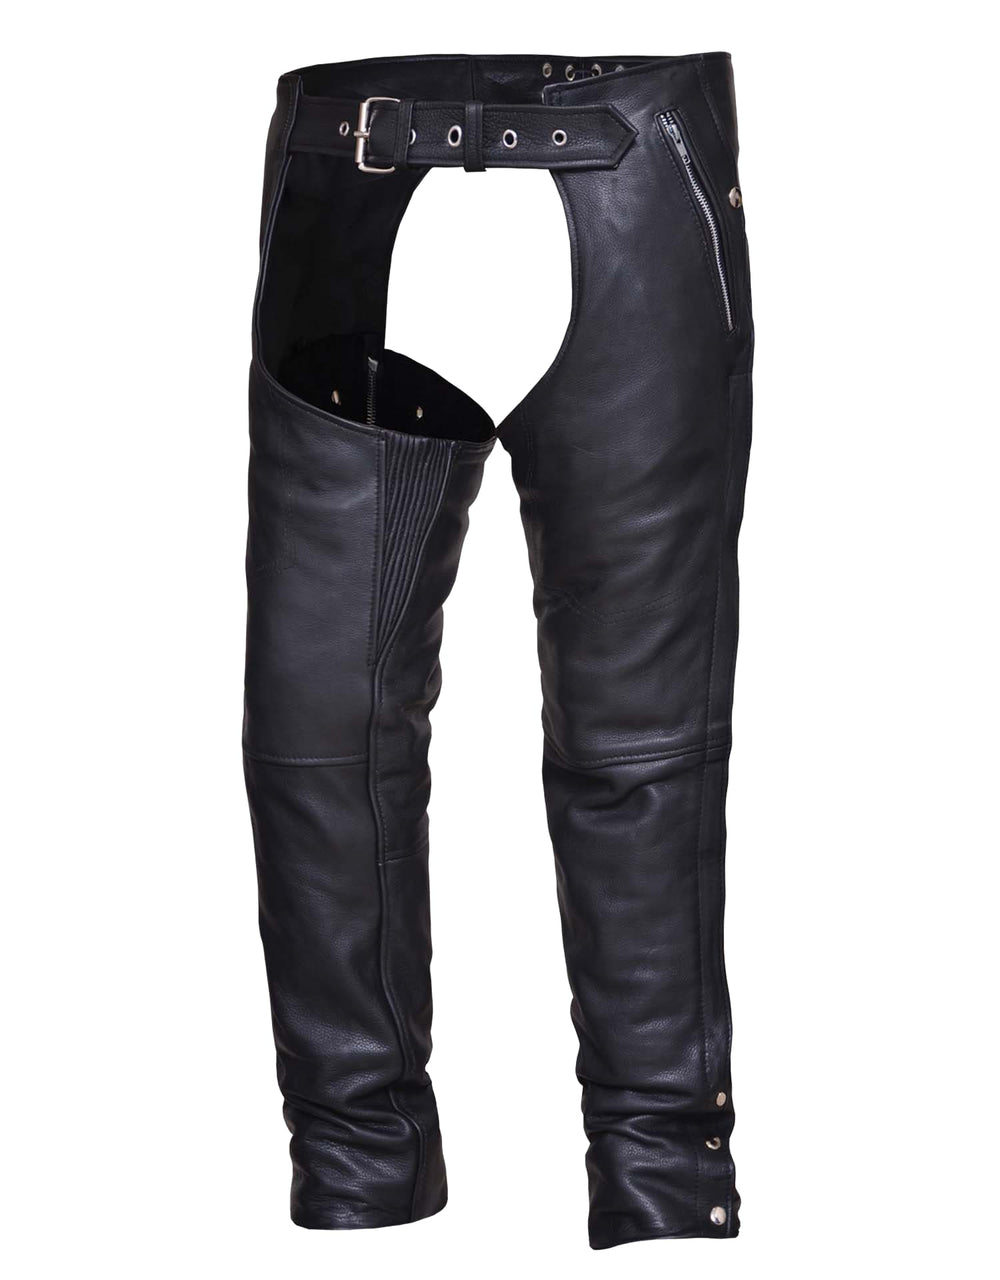 Unisex Naked Leather 4-Pocket Motorcycle Chaps